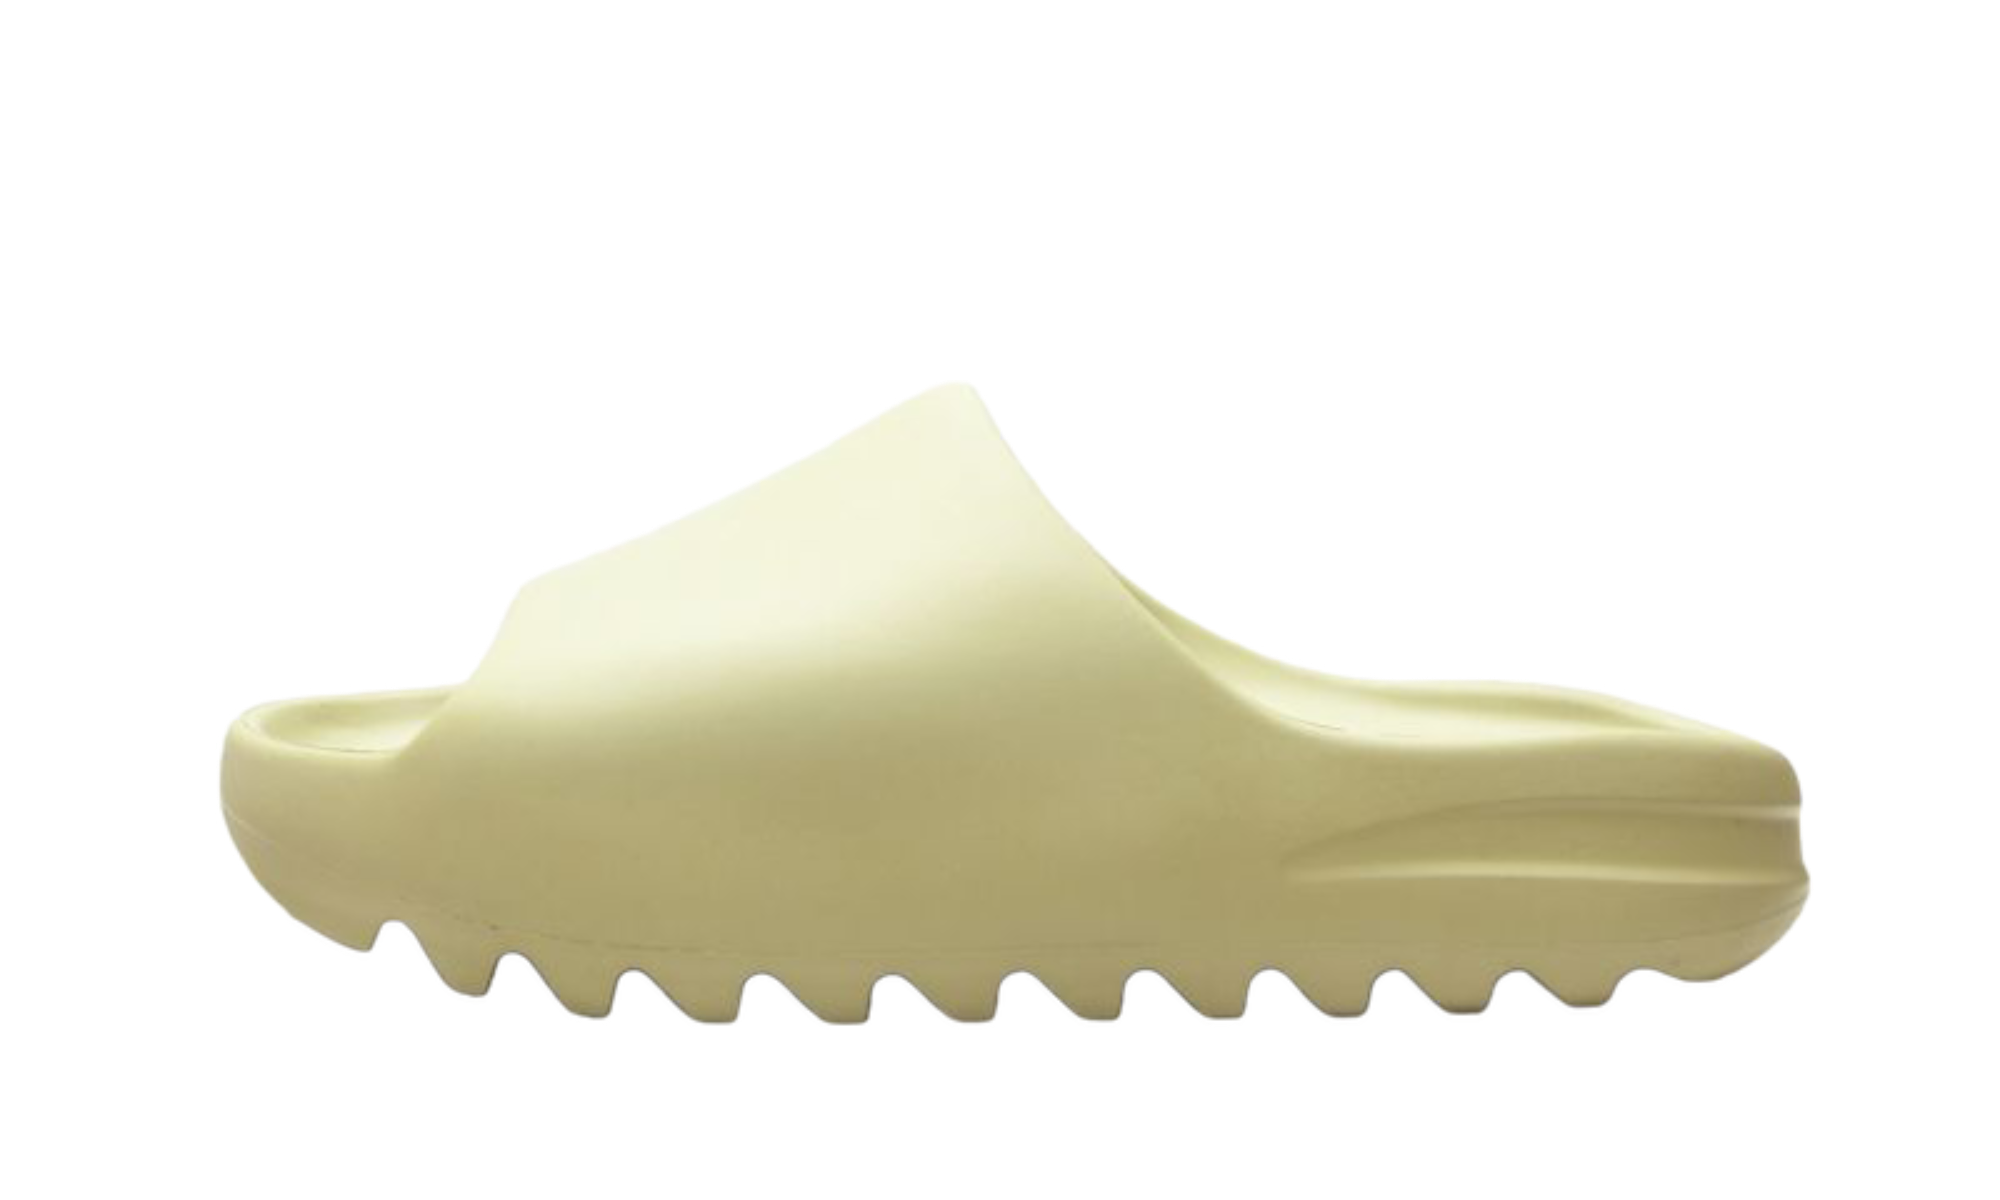 Adidas Yeezy Slide "Resin" (2021)